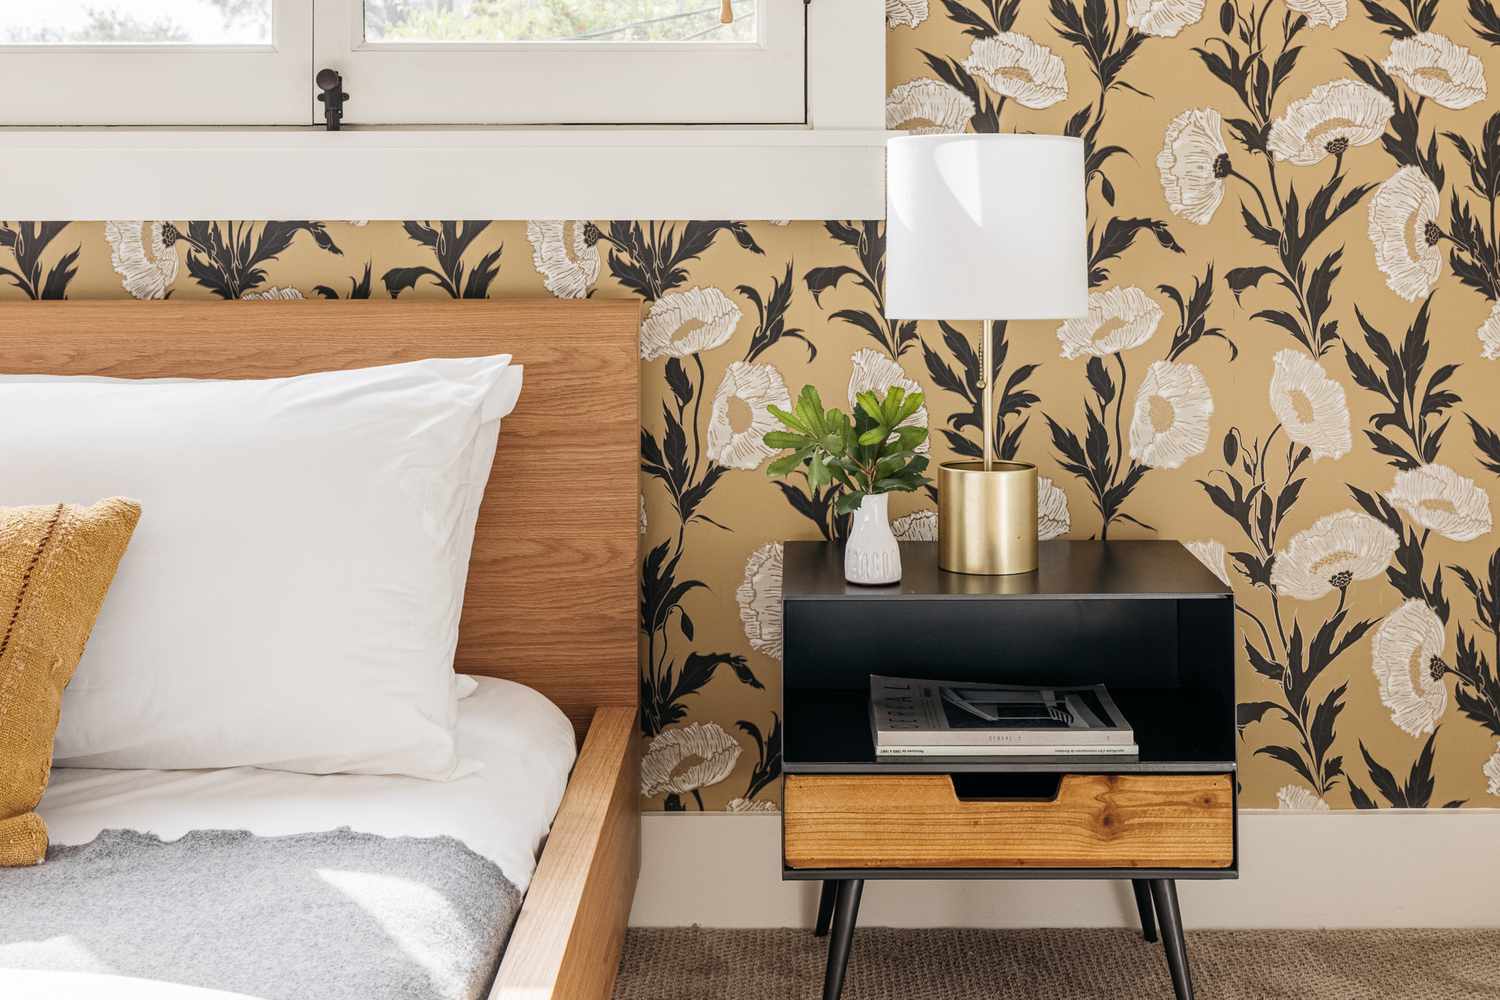 Chambre à coucher décorée avec papier peint floral, table de nuit noire et bois et cadre de lit en bois avec linge blanc